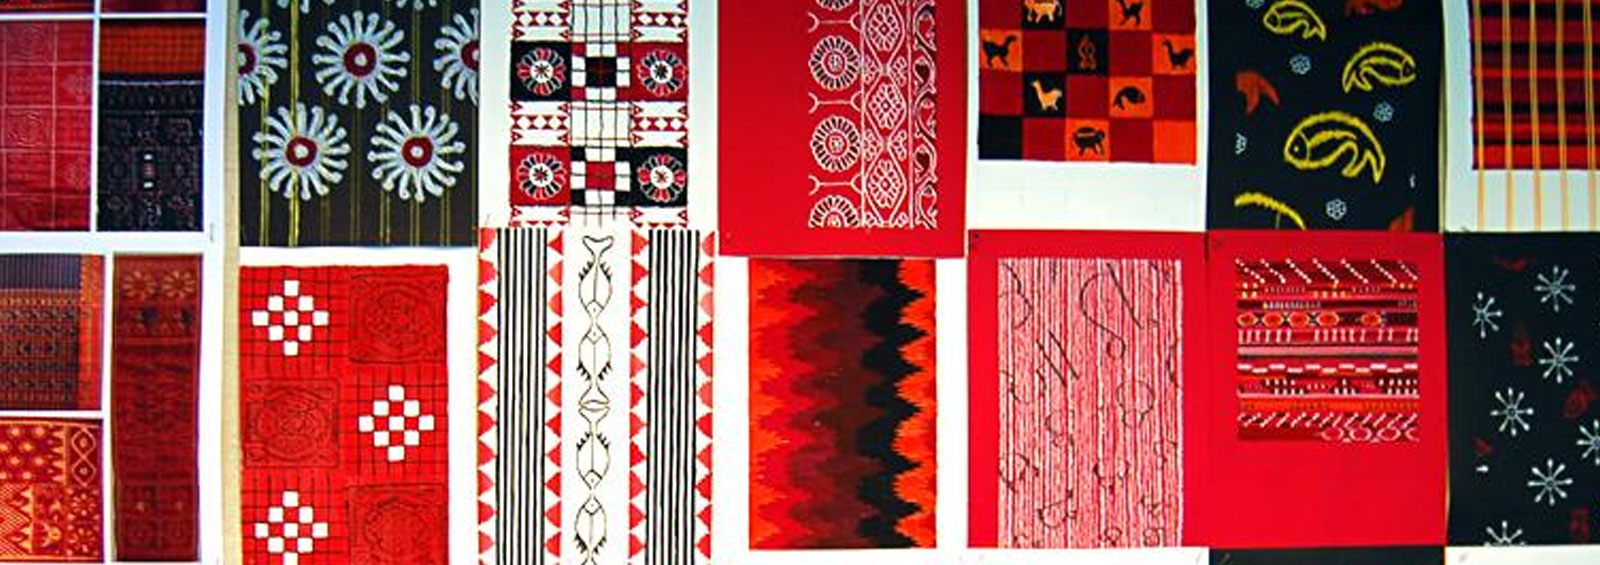 Textile Design